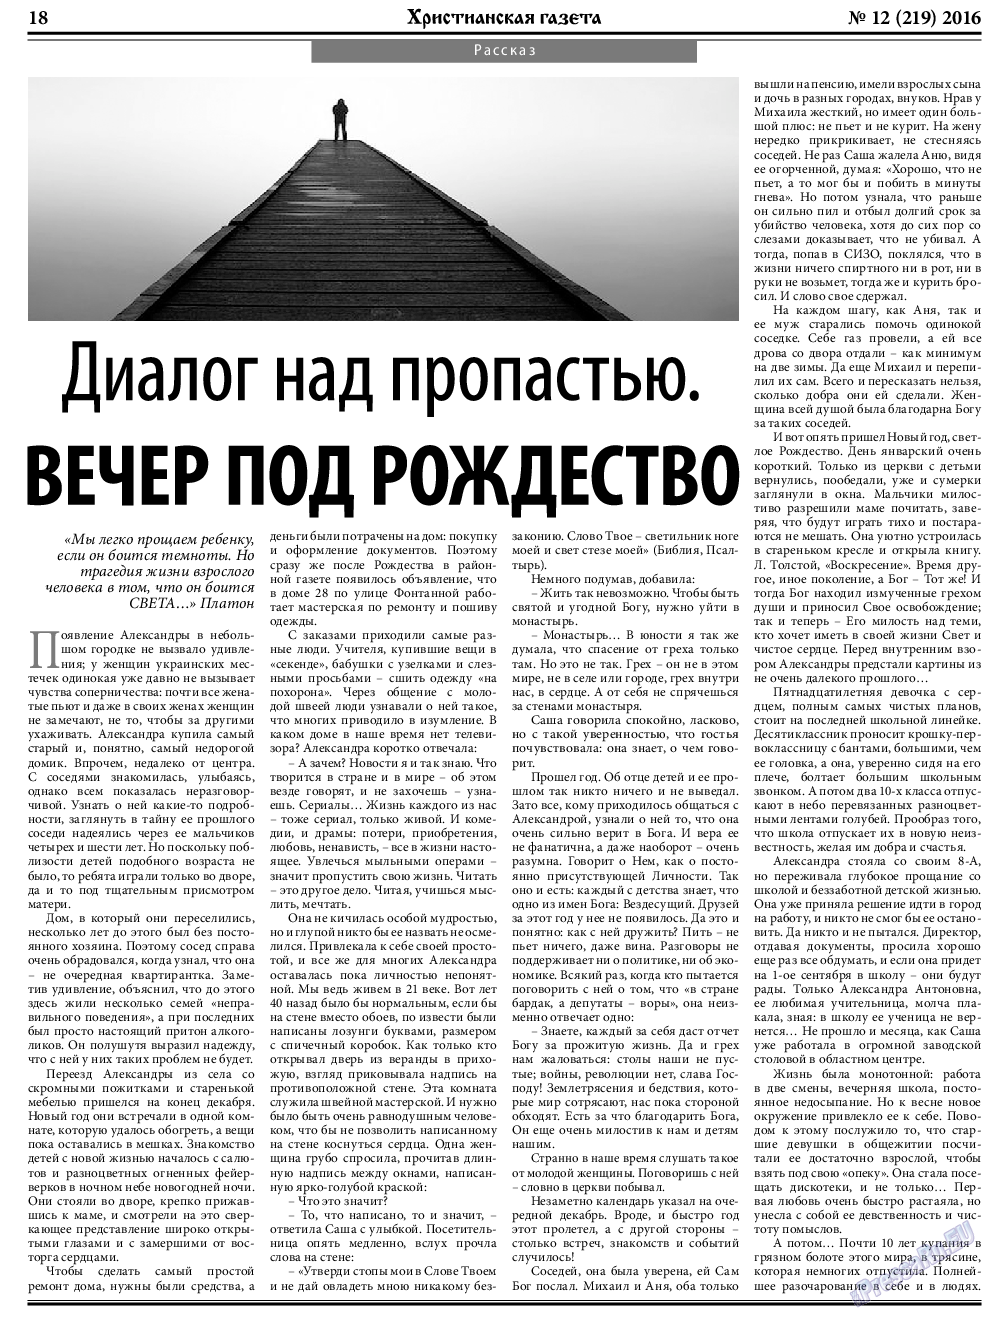 Христианская газета, газета. 2016 №12 стр.26